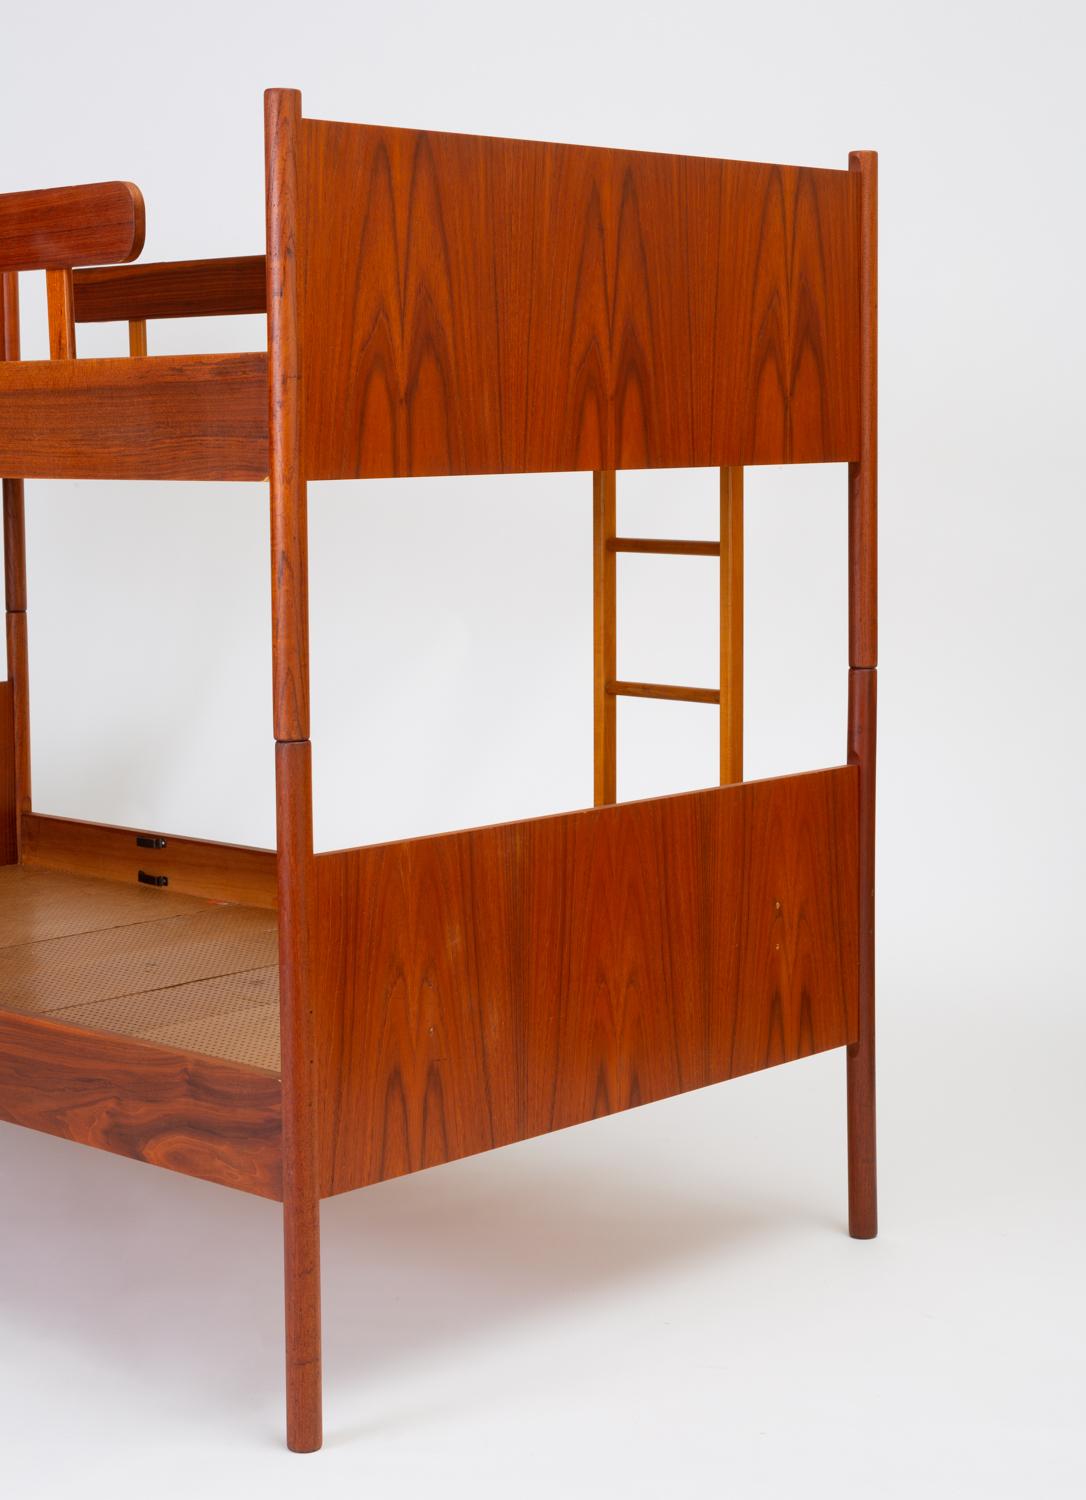 20th Century Scandinavian Modern Bunk Beds with Nightstands by Westnofa